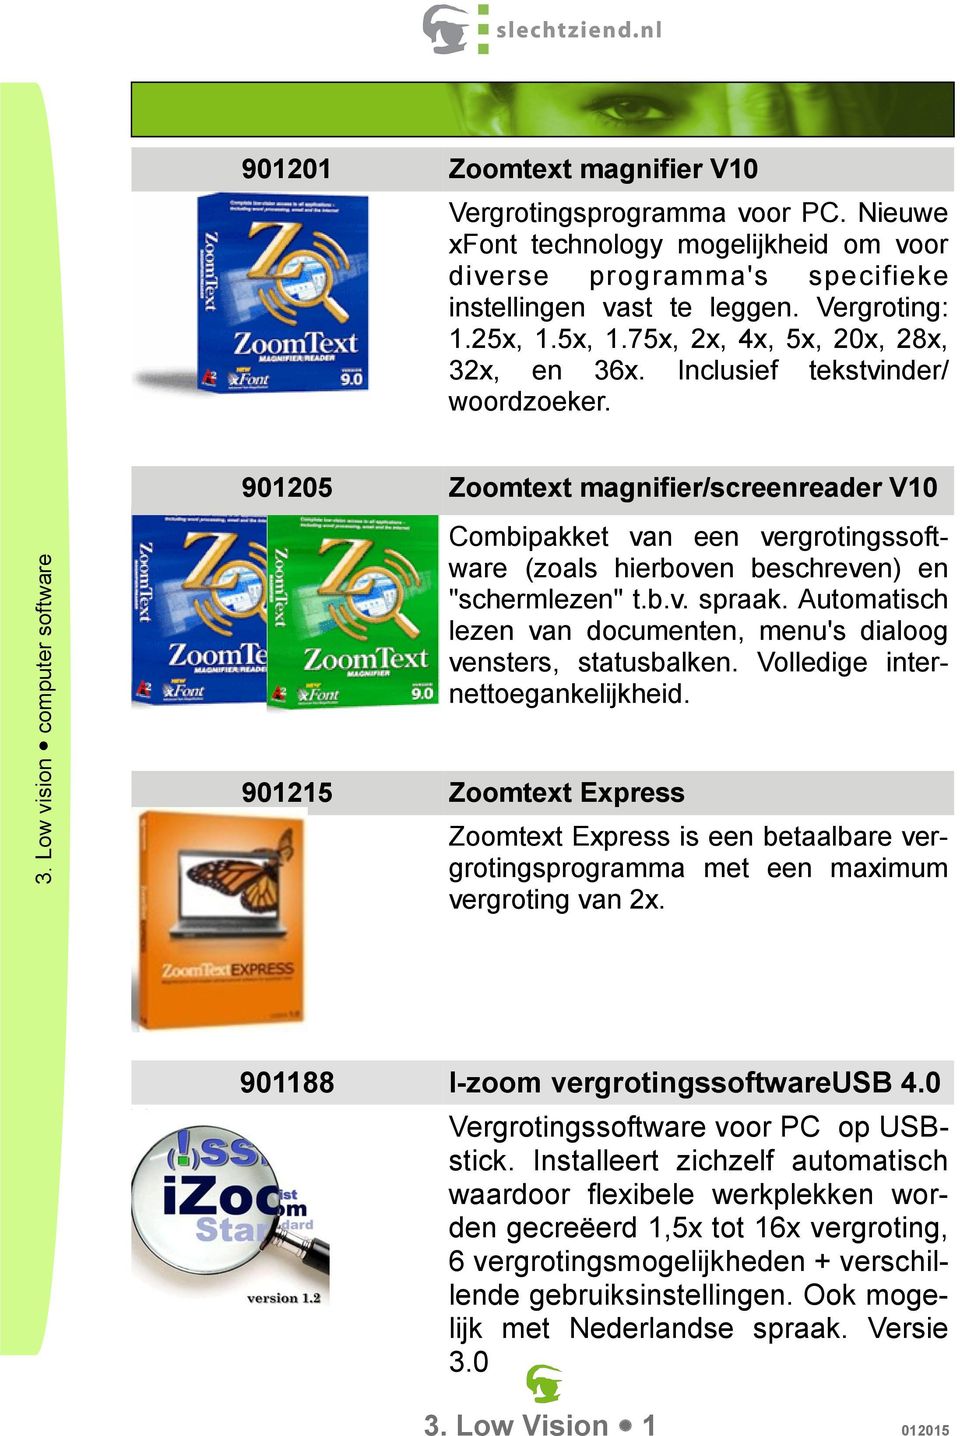 901205 Zoomtext magnifier/screenreader V10 Combipakket van een vergrotingssoftware (zoals hierboven beschreven) en "schermlezen" t.b.v. spraak.